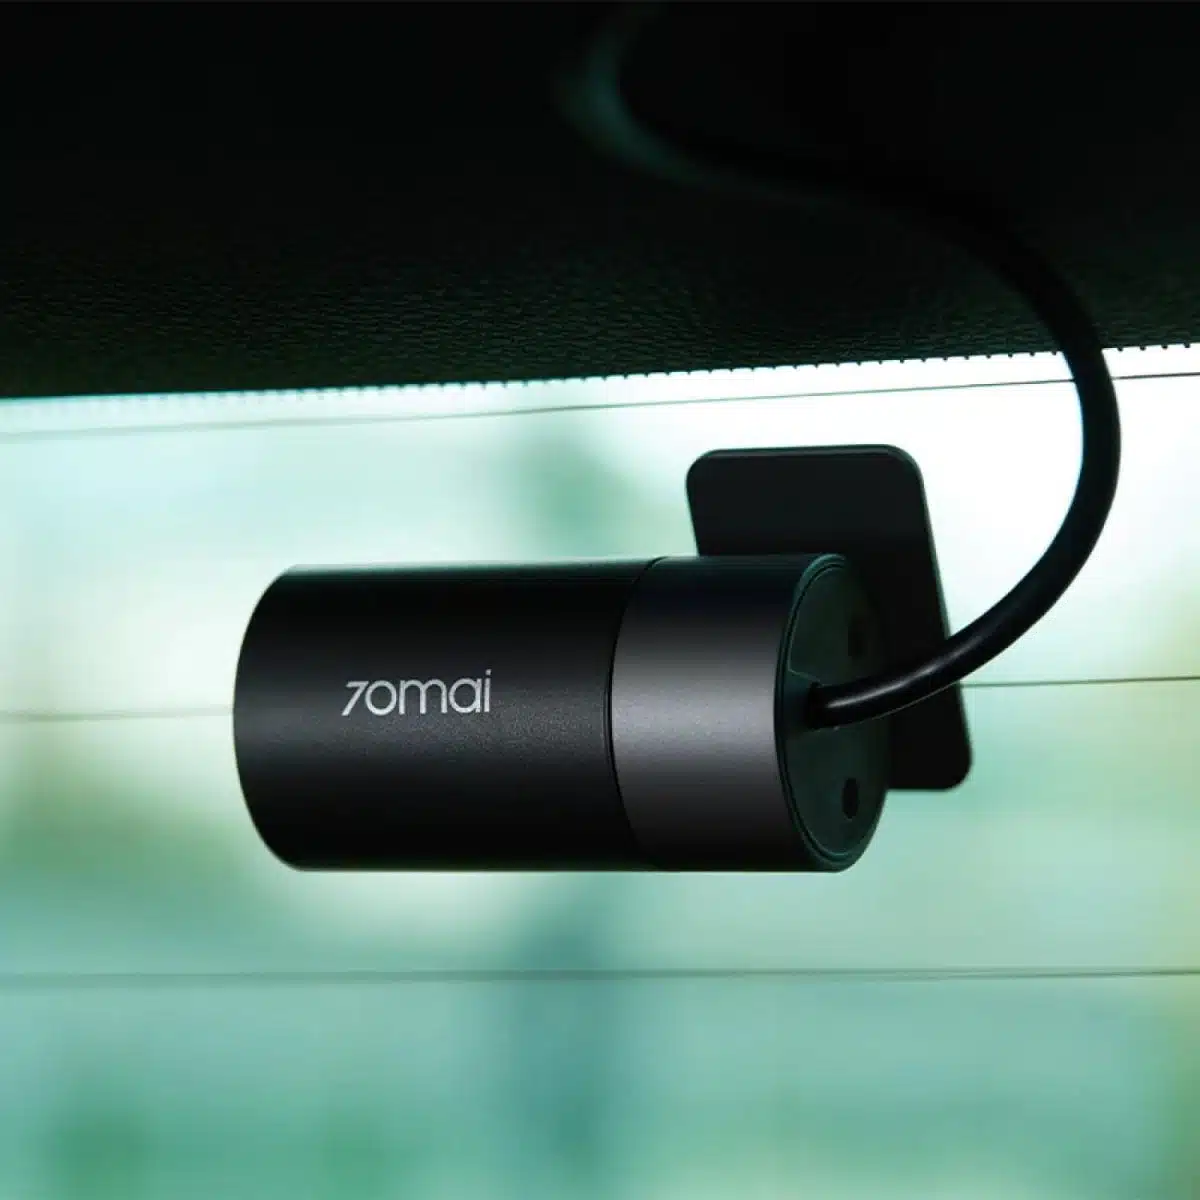 Arabanın yan tarafına 70Mai A800s-1 4K Araç İçi Kamera + RC06 Arka Kamera Seti takılıyor.